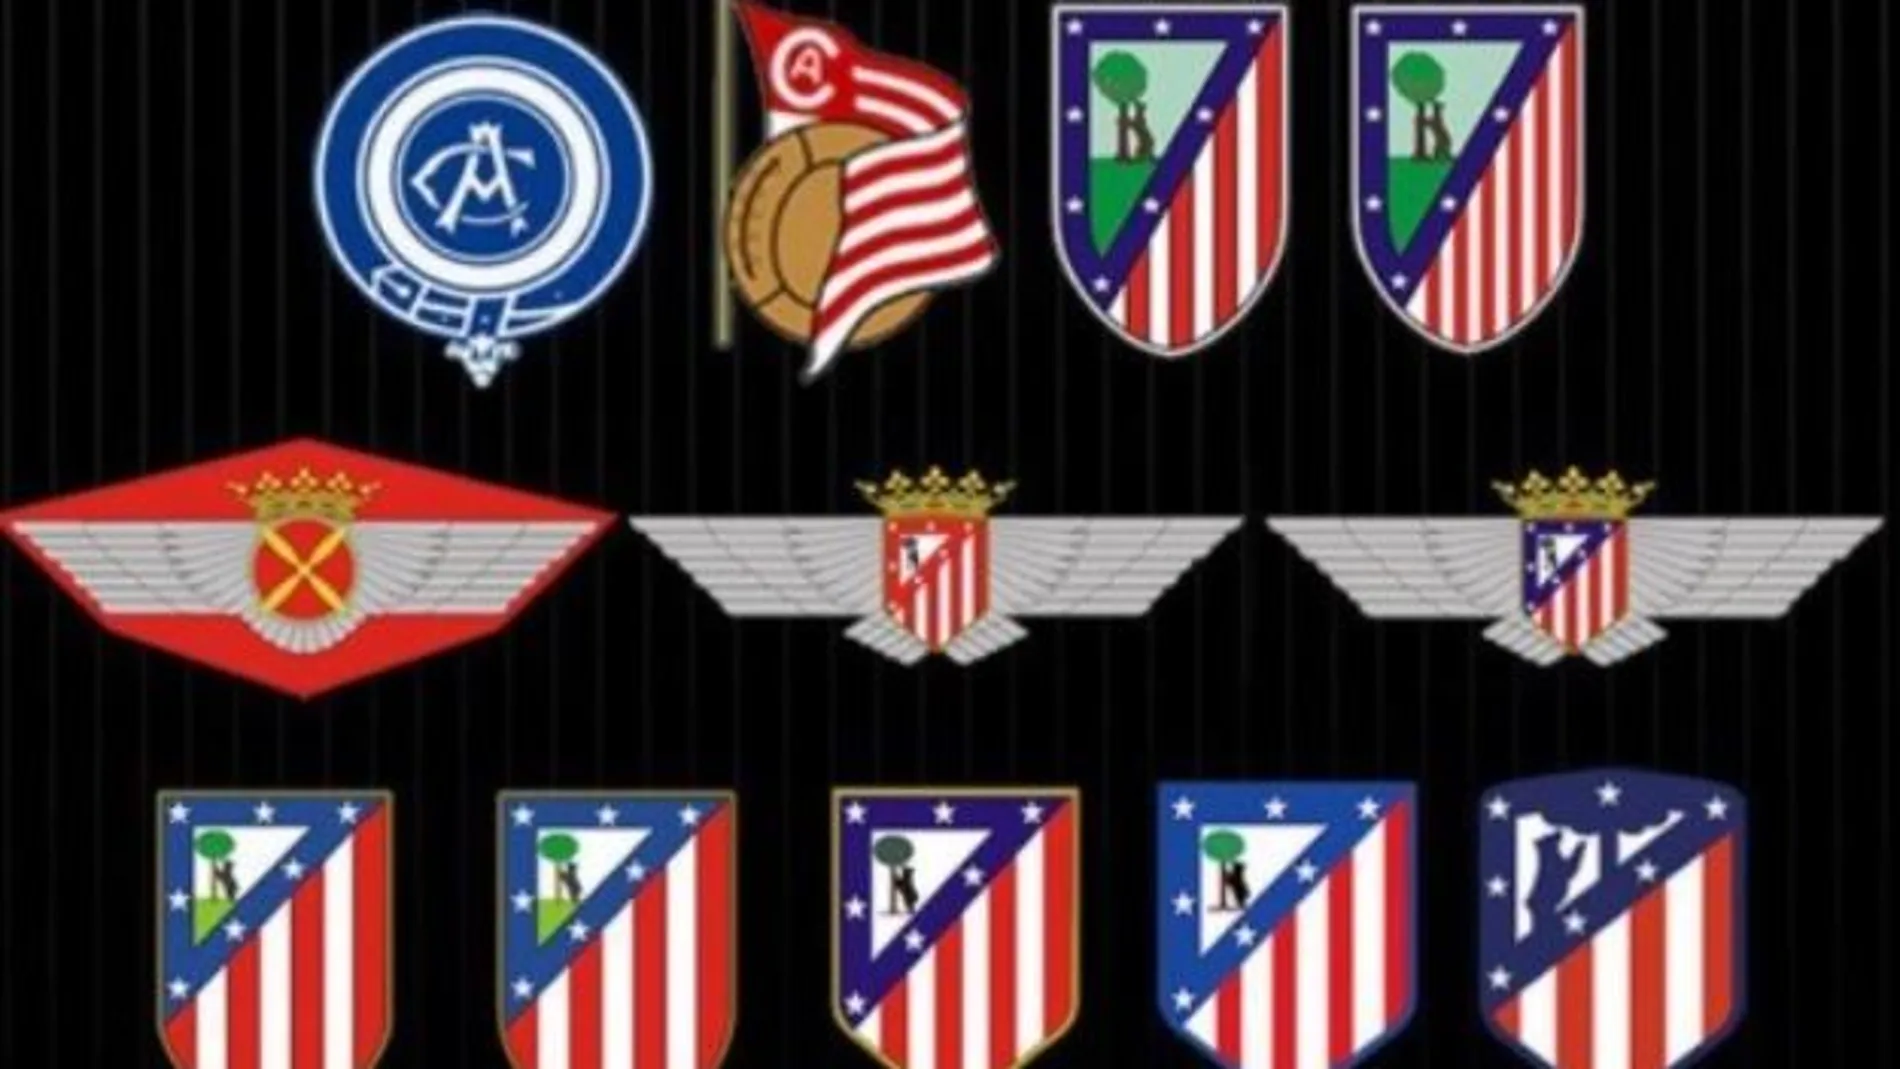 Escudo del Atlético de Madrid: historia, evolución, modificaciones,  polémicas y qué significan el oso y el madroño